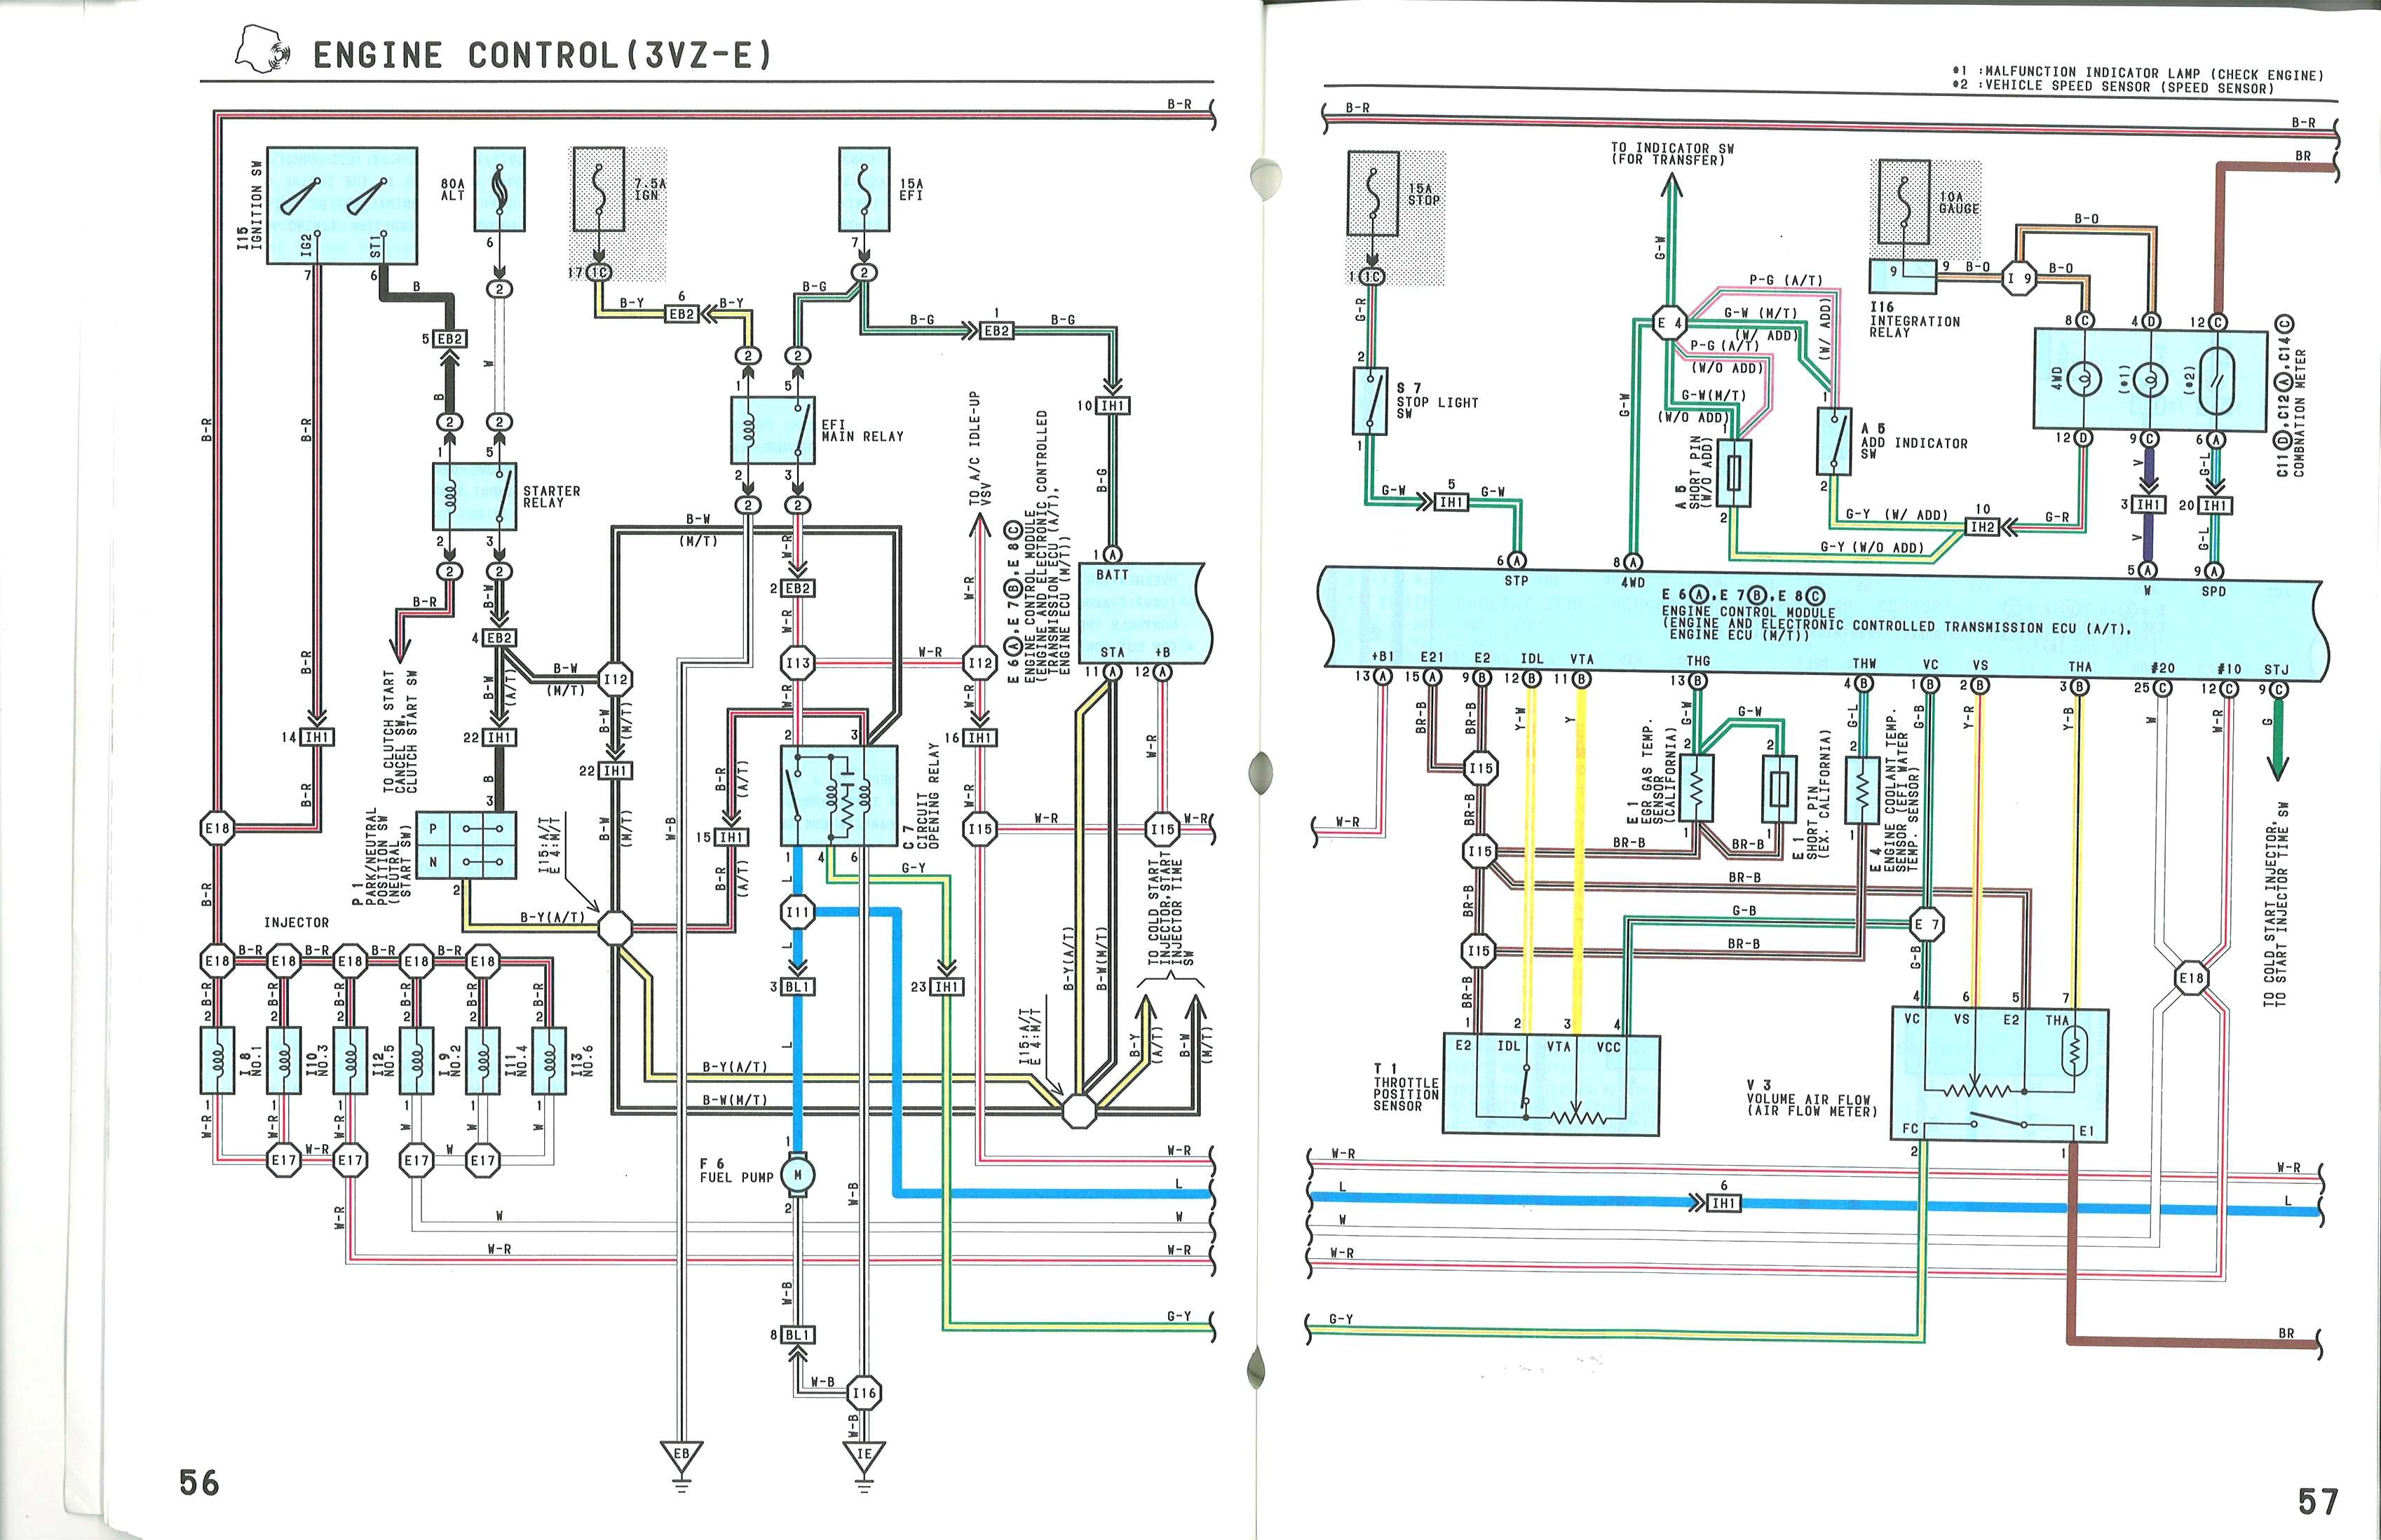 1988 Toyota Pickup Wiring Schematic - Wiring Diagram 1988 Toyota Pickup Tail Light Wiring Diagram